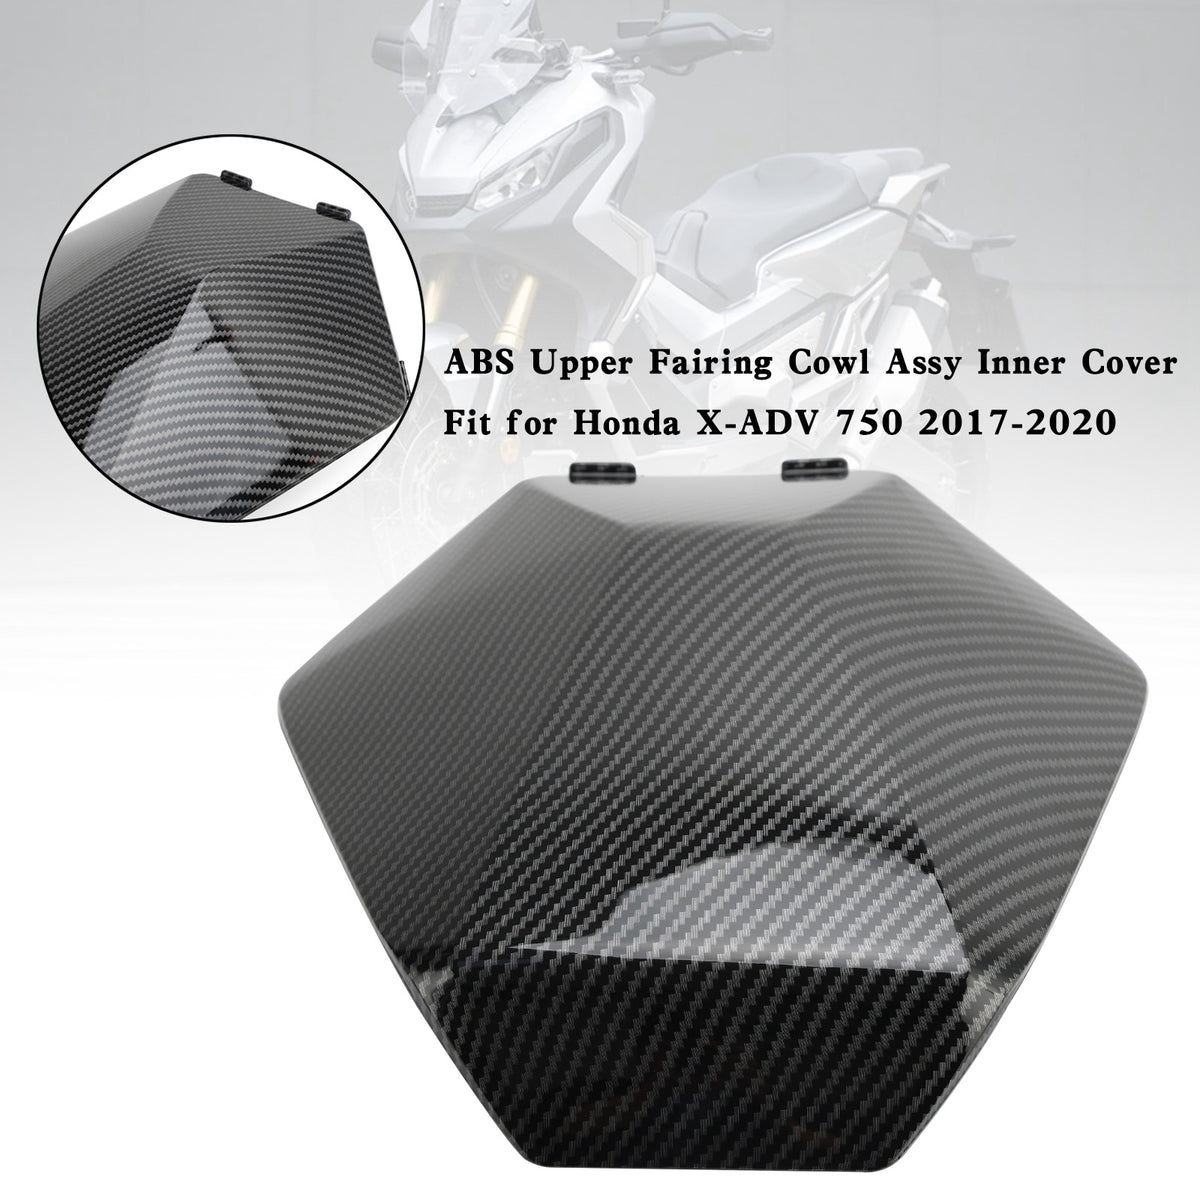 ABS Upper Fairing Cowl Assy Inner Cover for Honda X-ADV 750 XADV 2017-2020